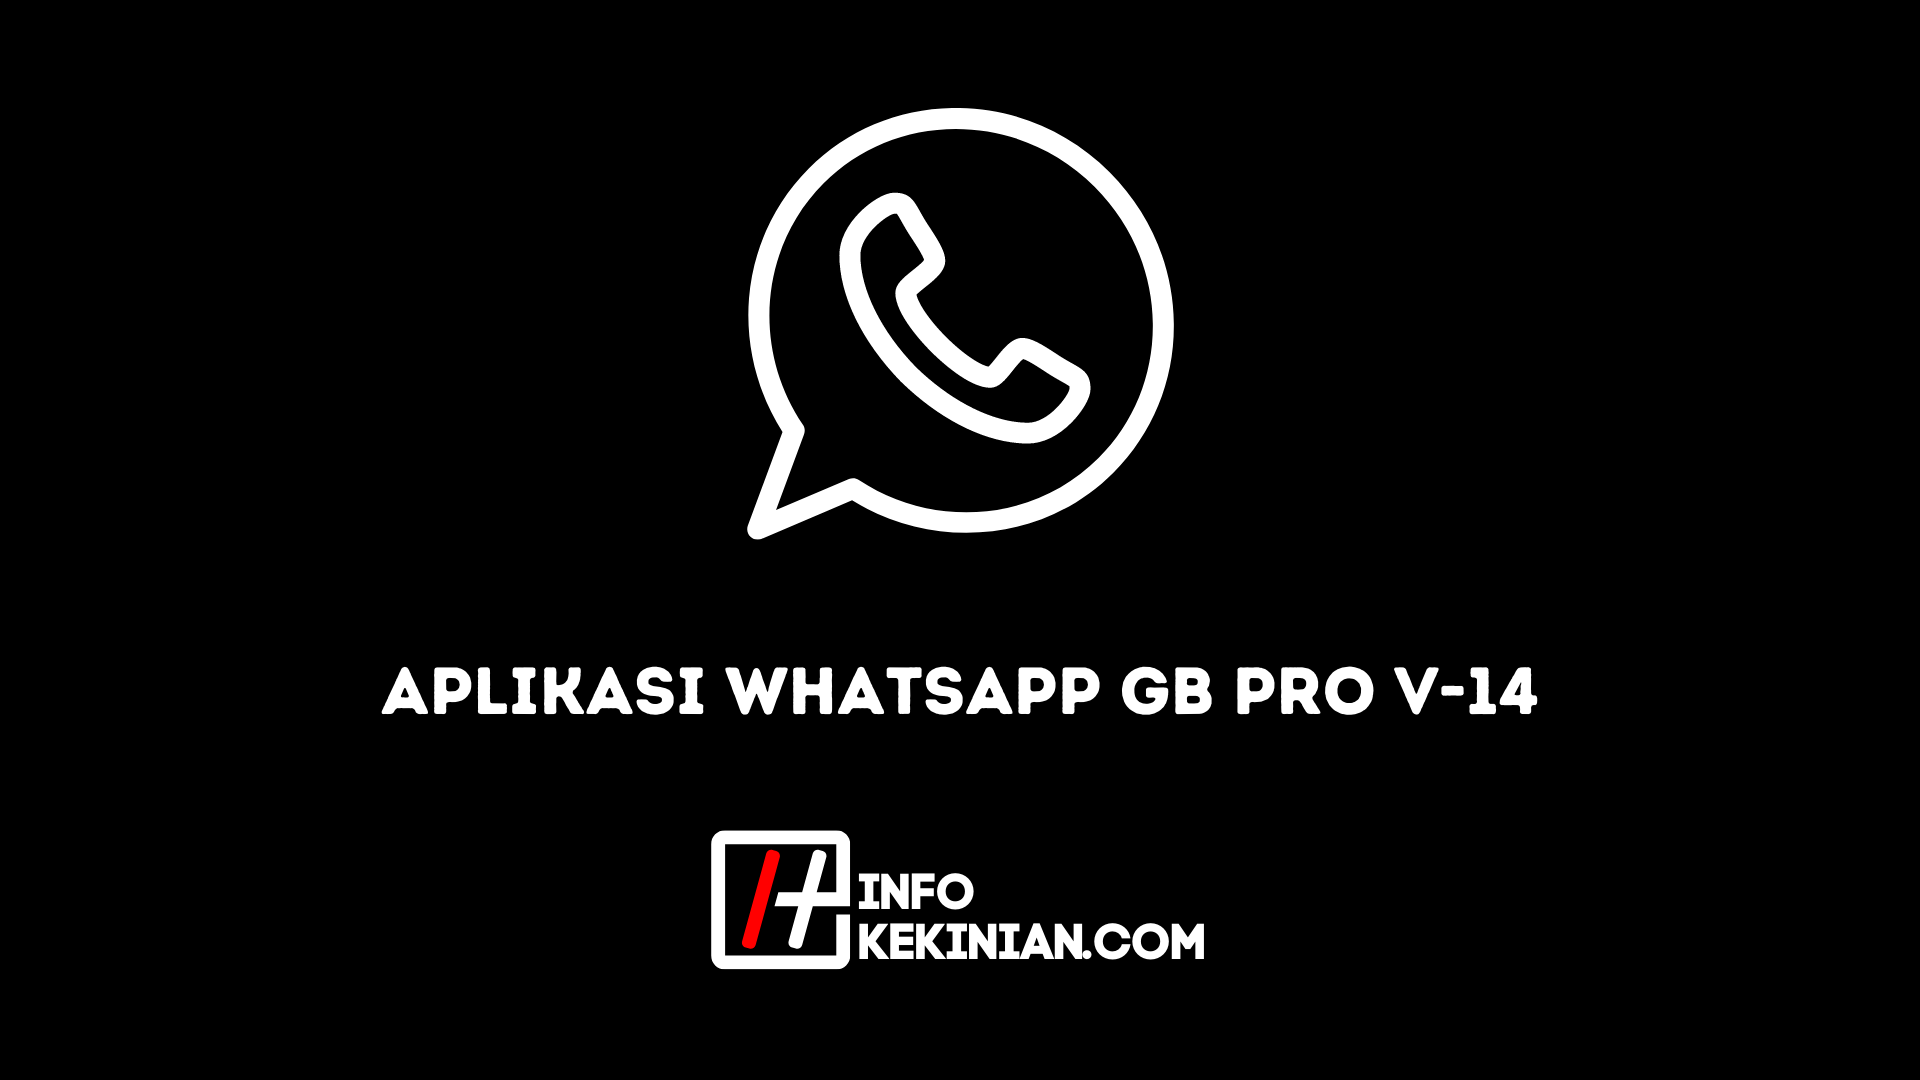 Aplikacja WhatsApp Gb Pro V 14, zobaczmy